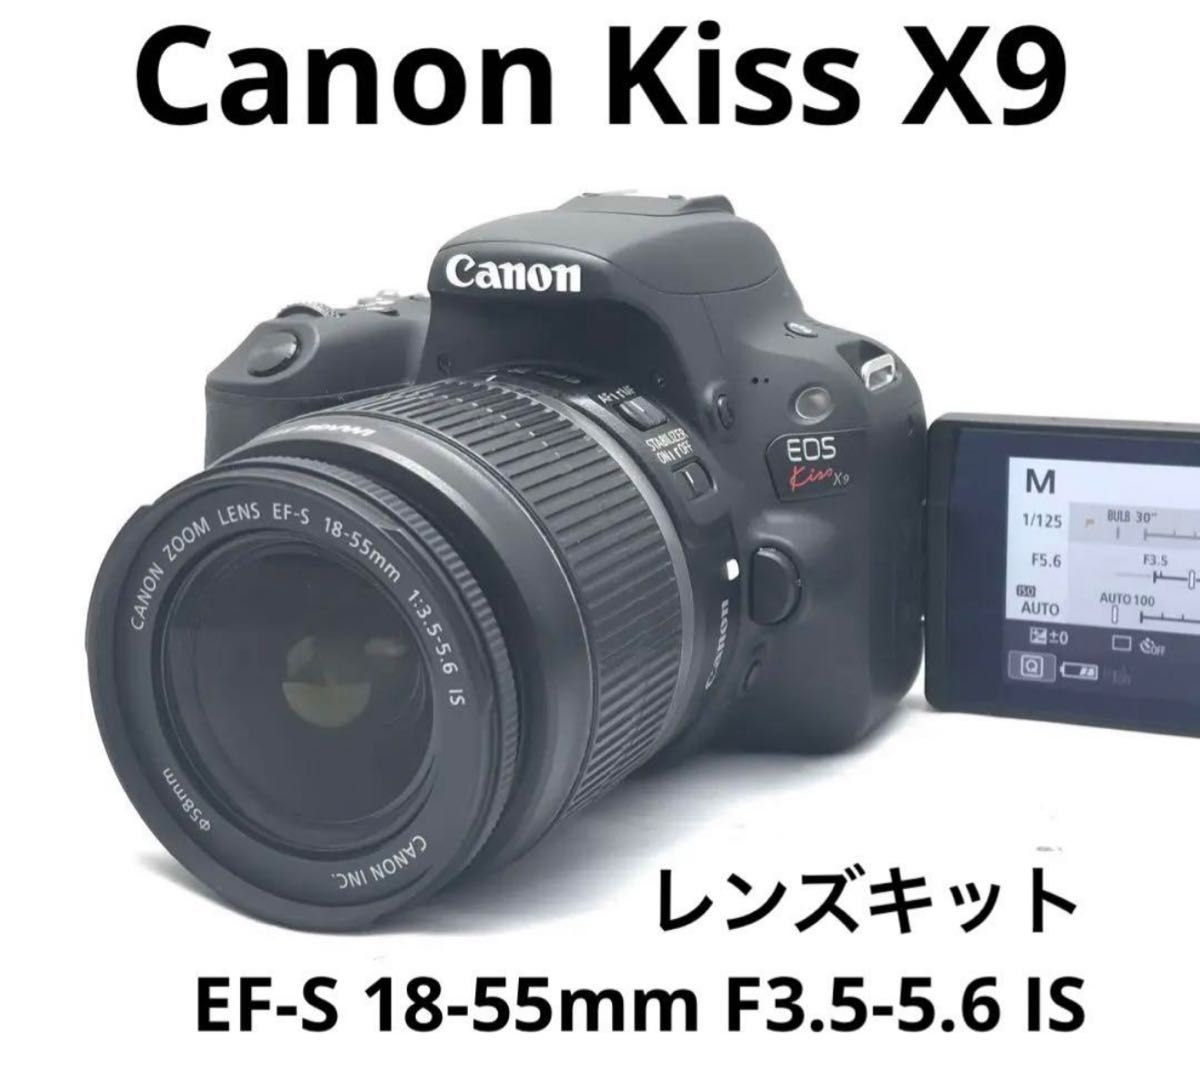 Canon EOS kiss x9レンズキット♪安心フルセット♪到着後即利用可能♪wifi装備機♪スマホにすぐ送れます♪